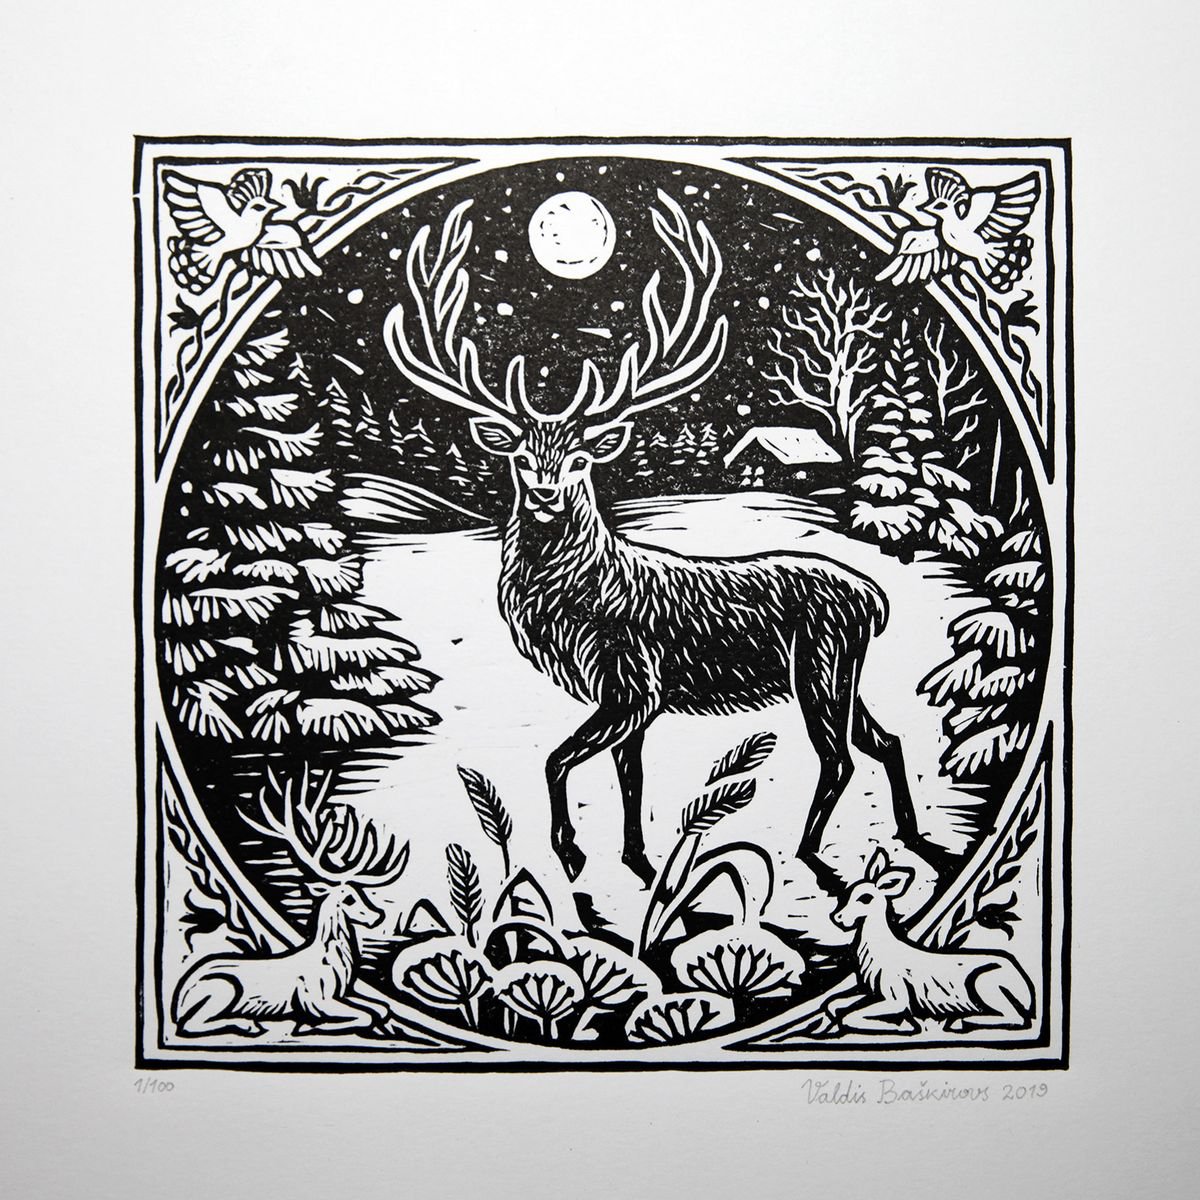 Buck, Male Deer, Stag in Winter. Linocut Print. by Valdis Baskirovs